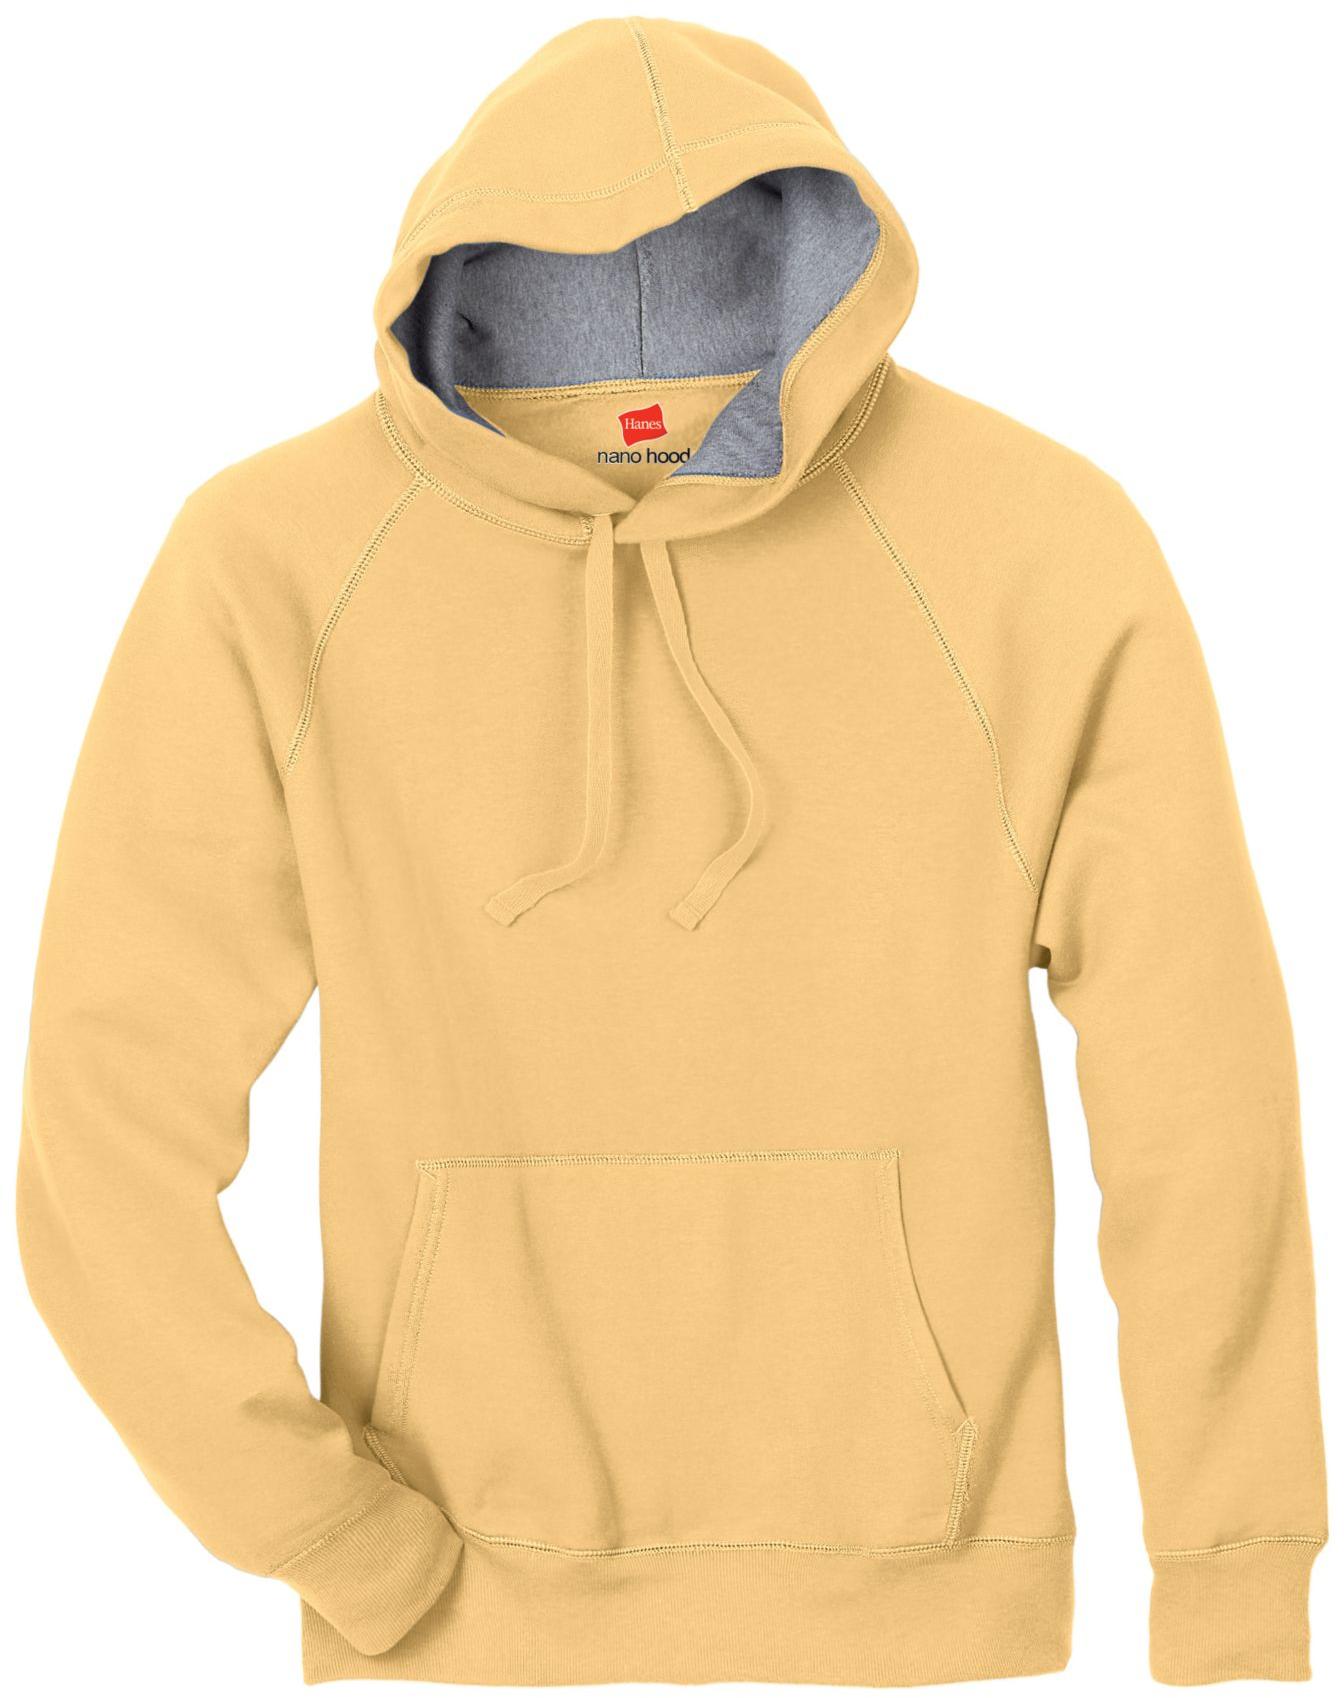 HANES Adult Nano Sweats Pullover Hoodie Sweatshirt - N270 | eBay